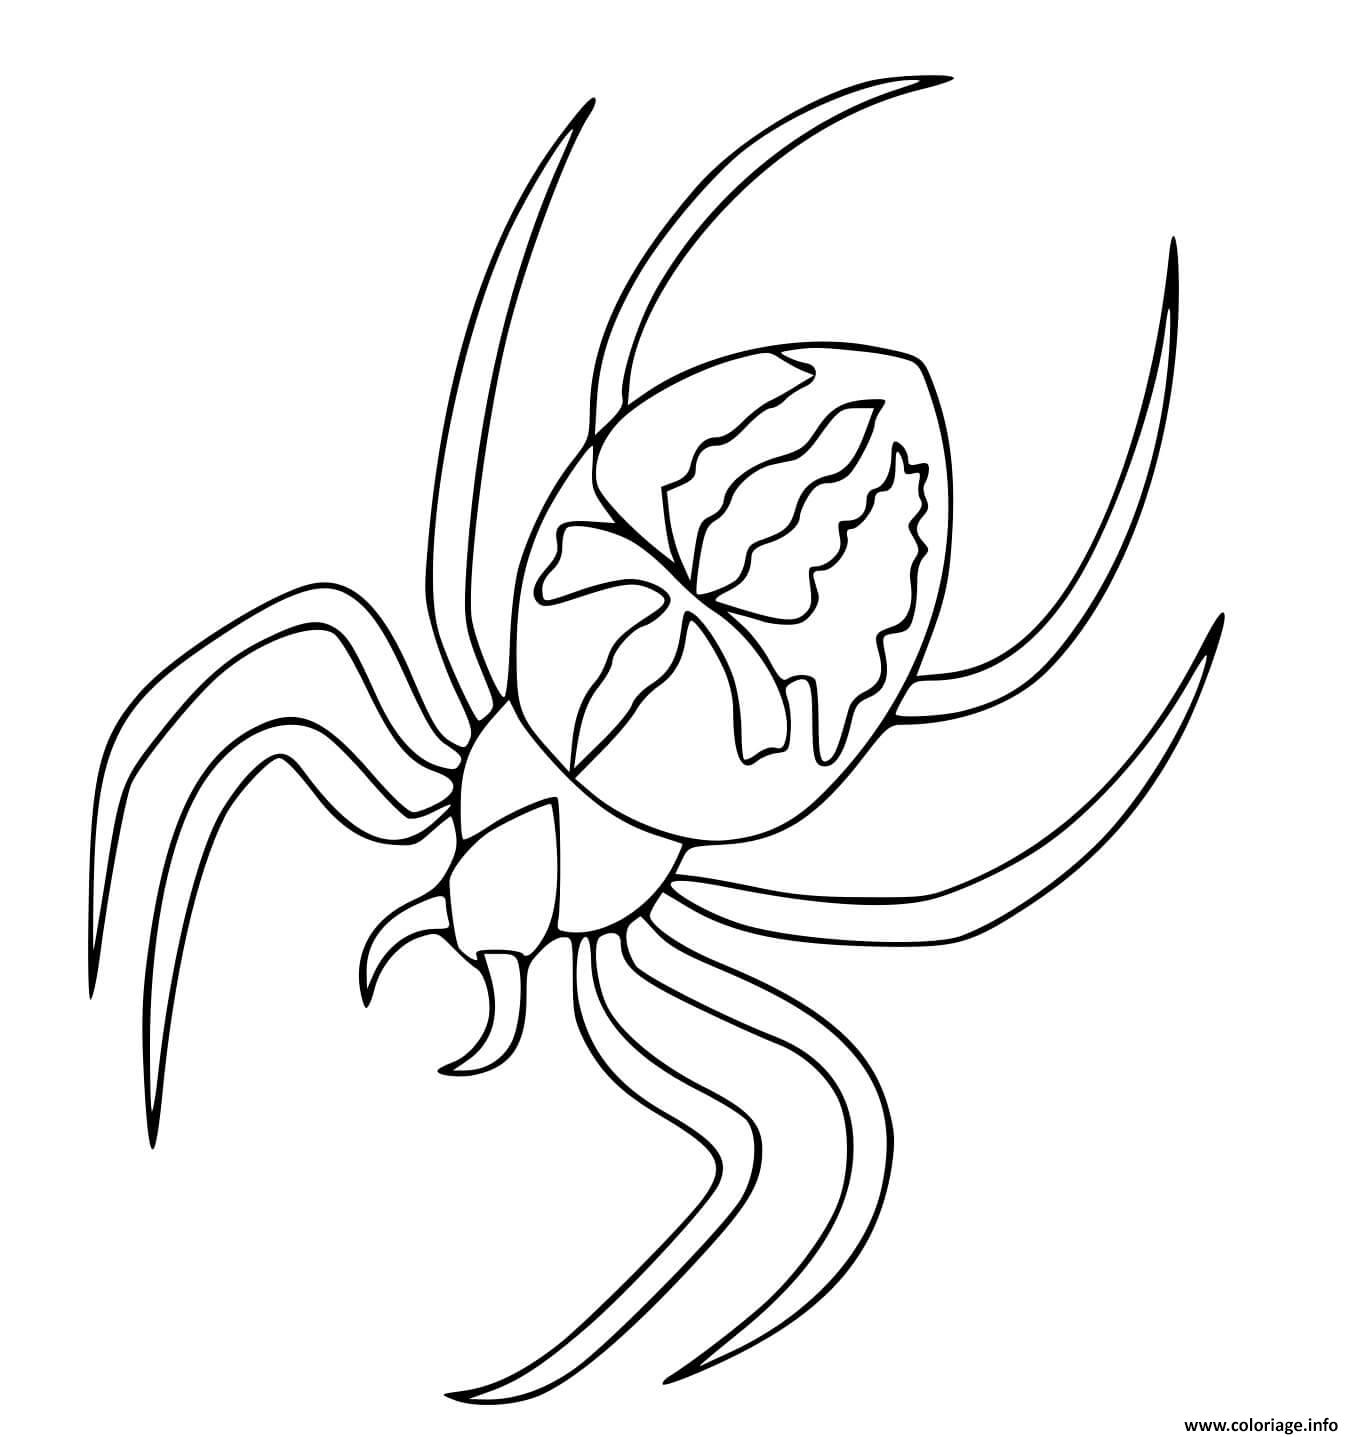 Comment dessiner l'araignée de Spiderman 